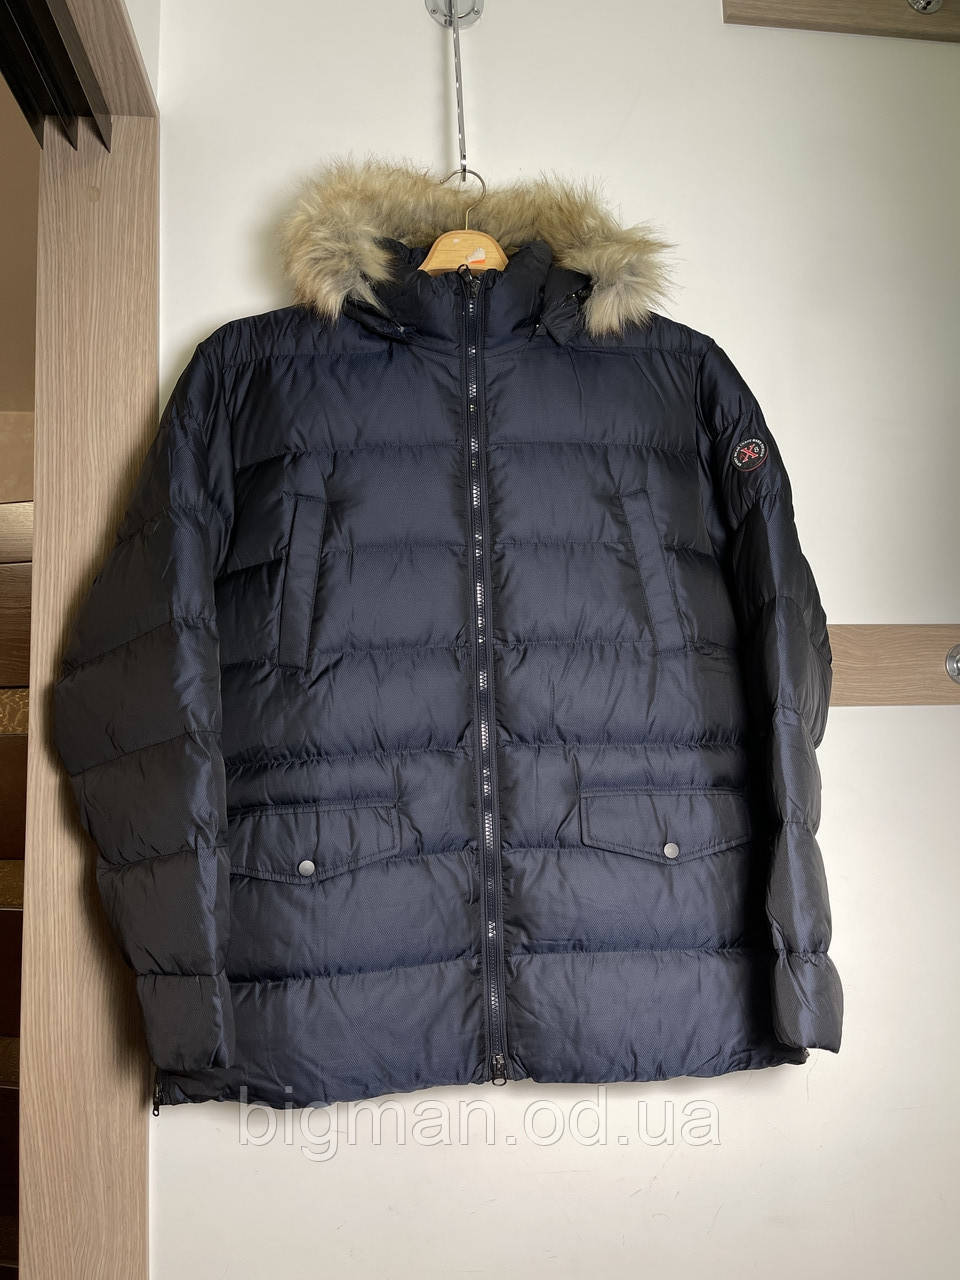 Чоловіча синя зимова куртка з капюшоном Olser 6-10XL батал Туреччина великі розміри